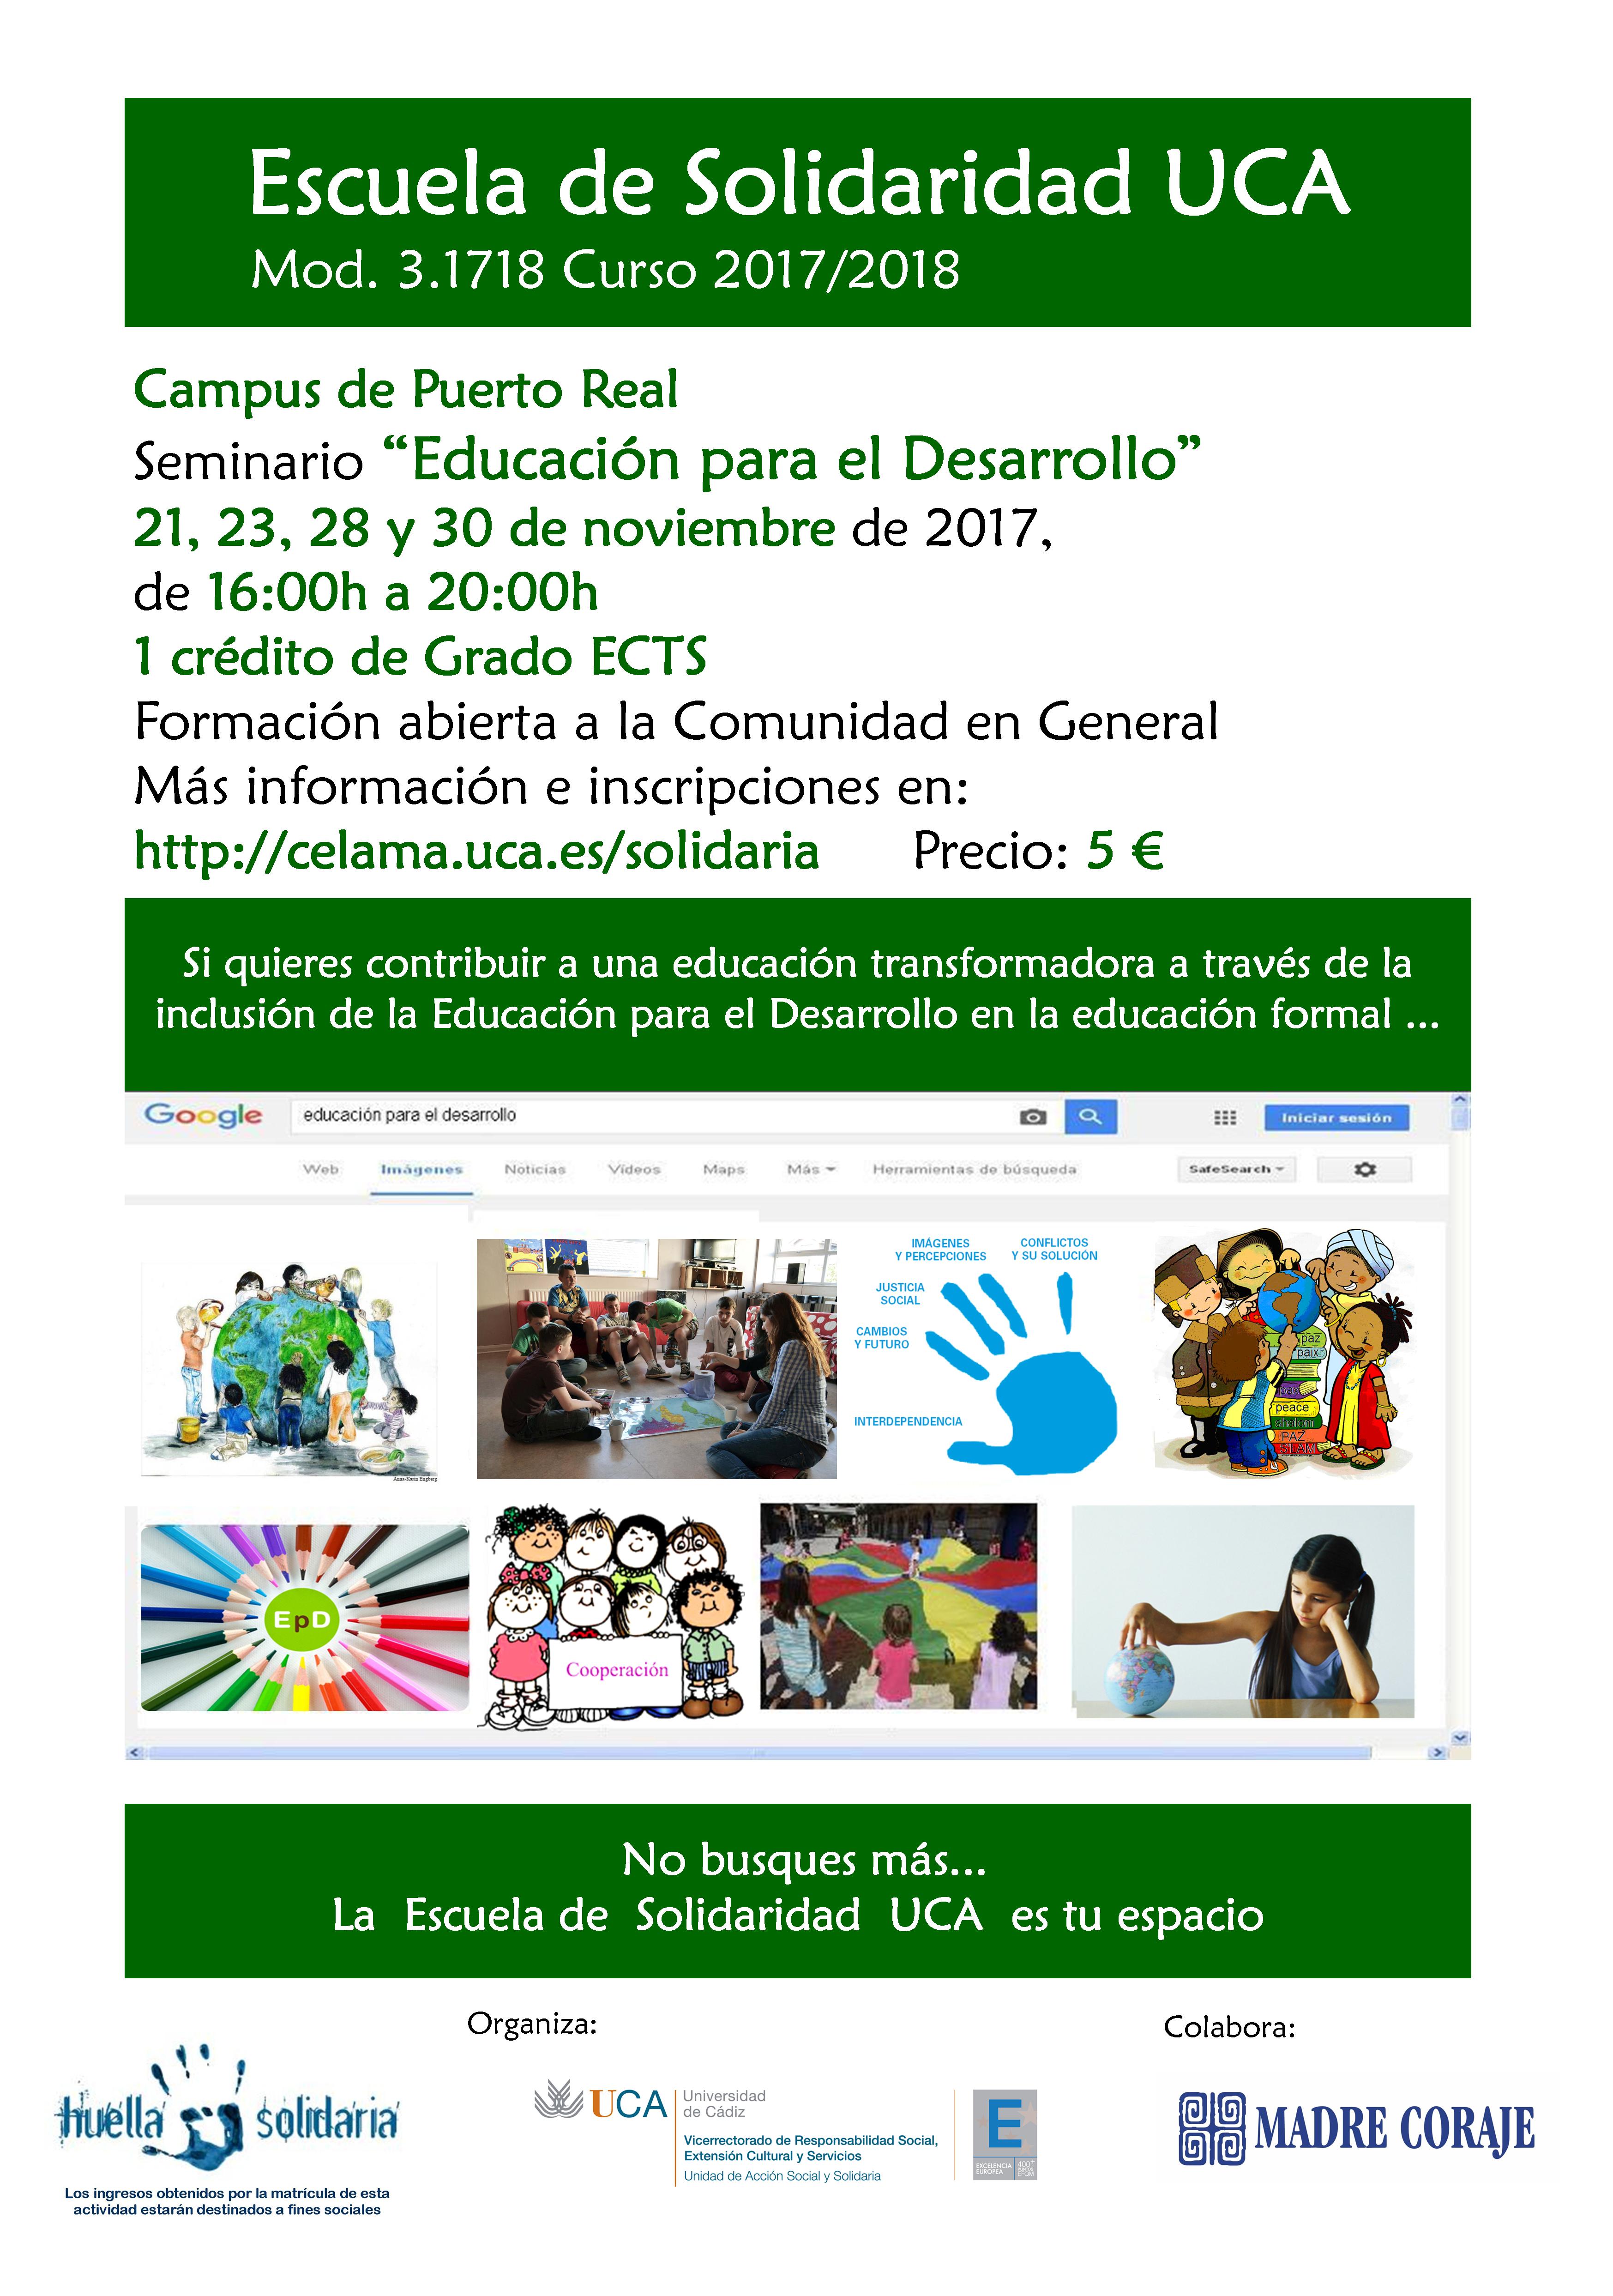 Campus de Puerto Real. Seminario “Educación para el desarrollo”. 21, 23, 28 y 30 de noviembre. Escuela de Solidaridad UCA. Módulo 3.1718